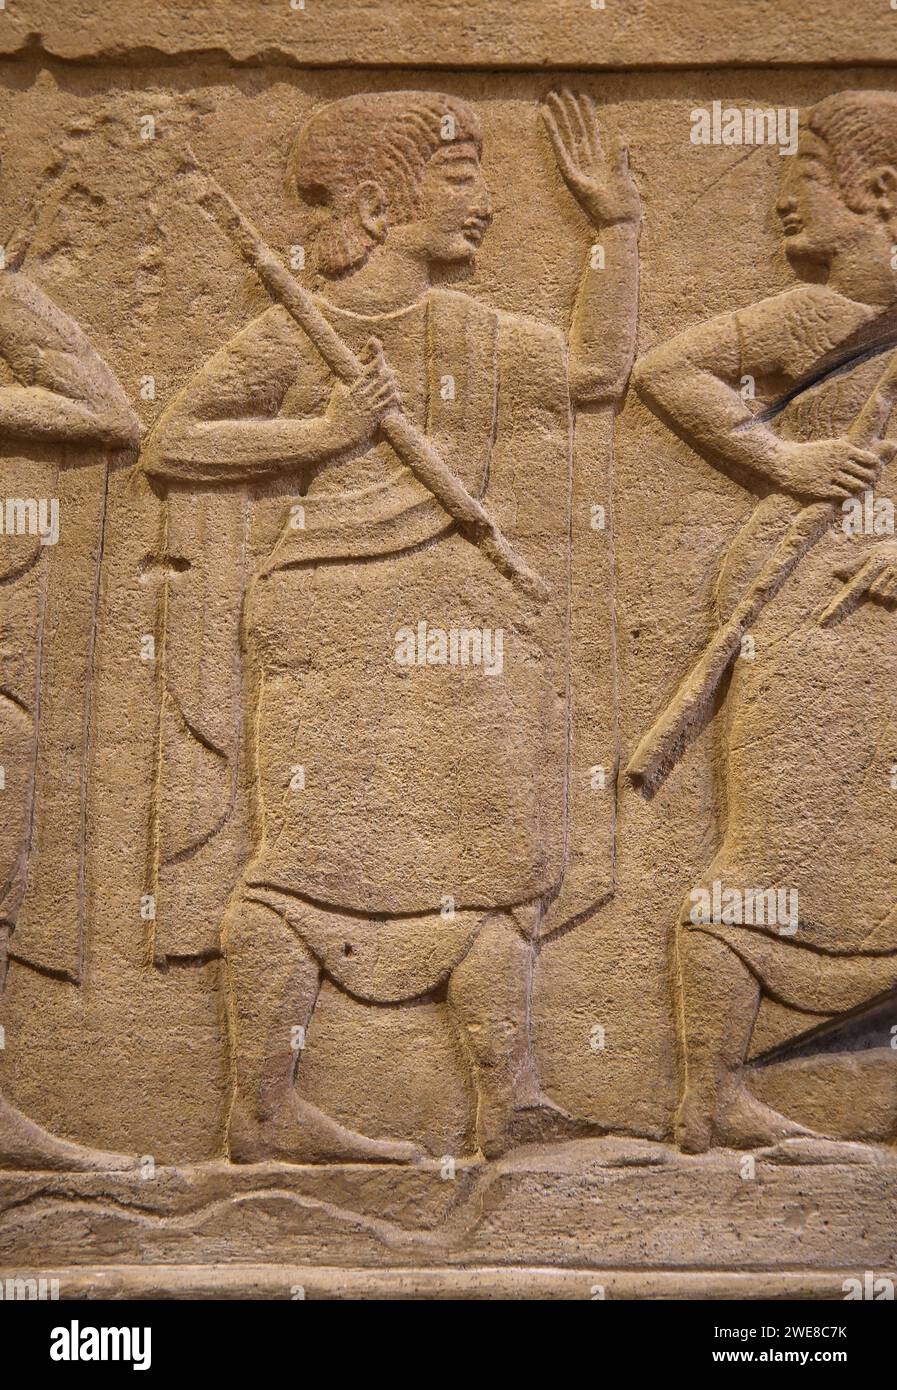 Etruskische Zivilisation. Erleichterung von einem Begräbnis Cippus. 5. Jahrhundert v. Chr. Von Chiuse. Barraco Museum. Rom. Stockfoto